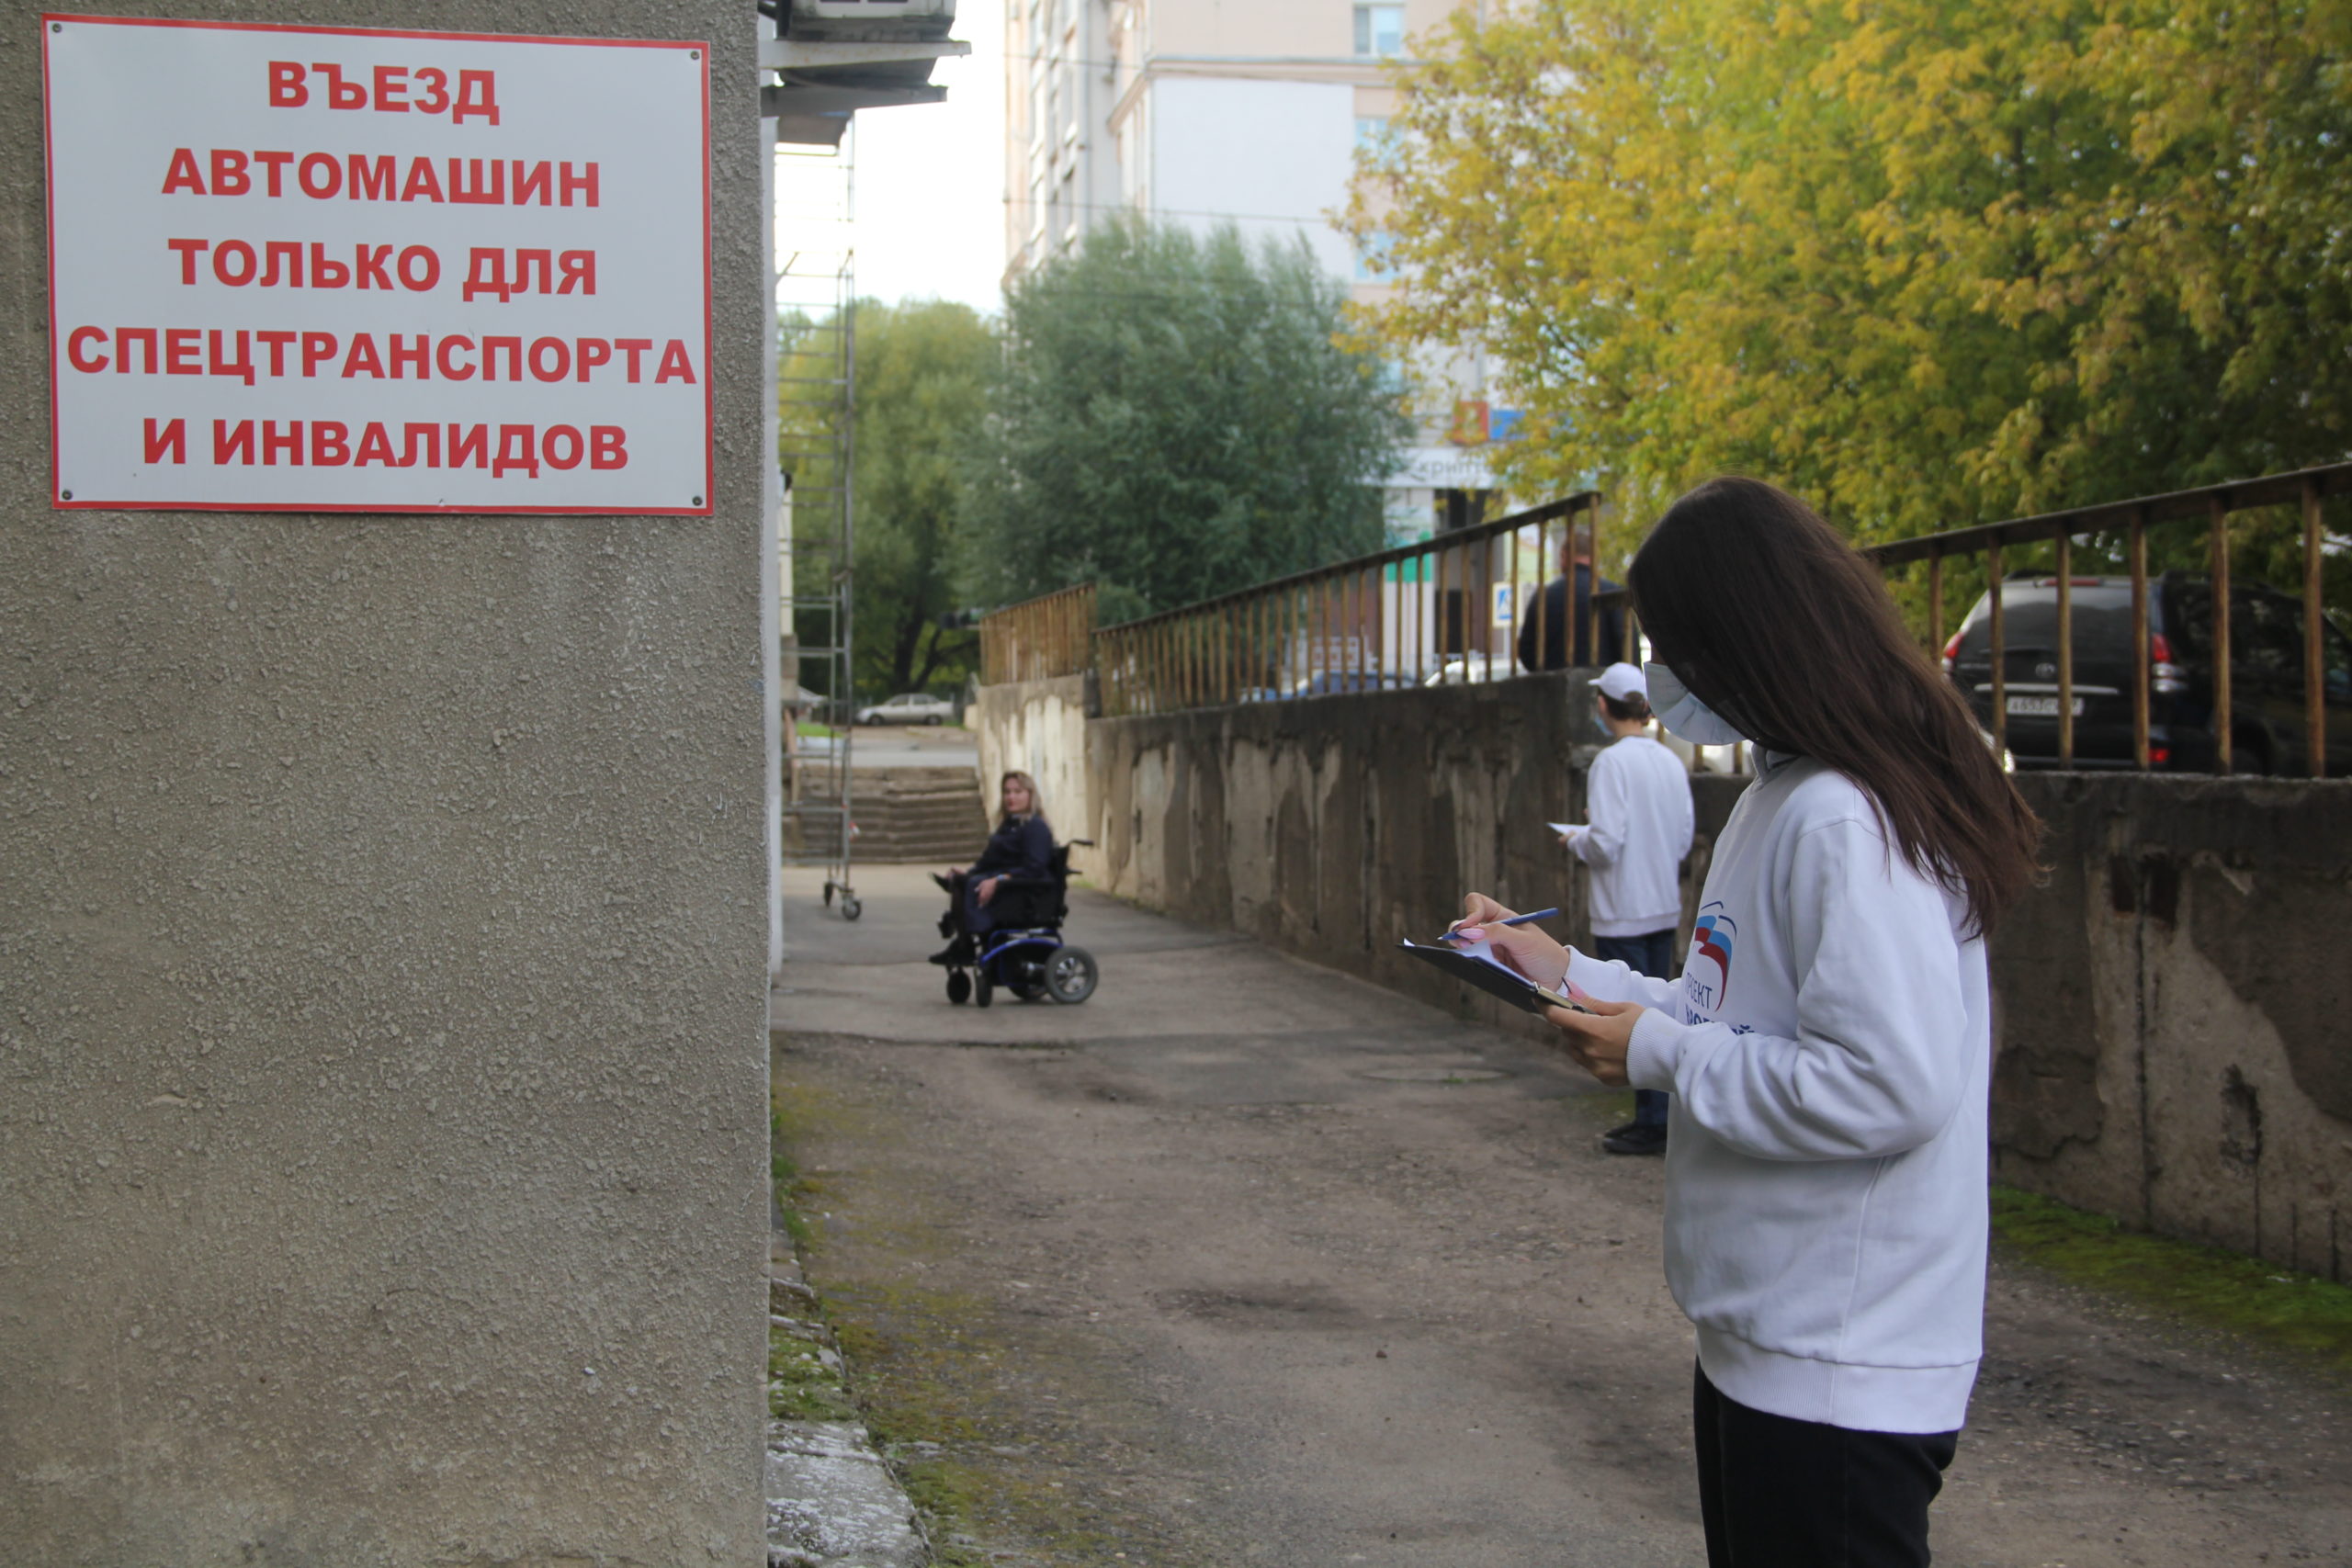 Активисты «Единой России» проверили наличие и состояние пандусов в Заволжском районе города Твери